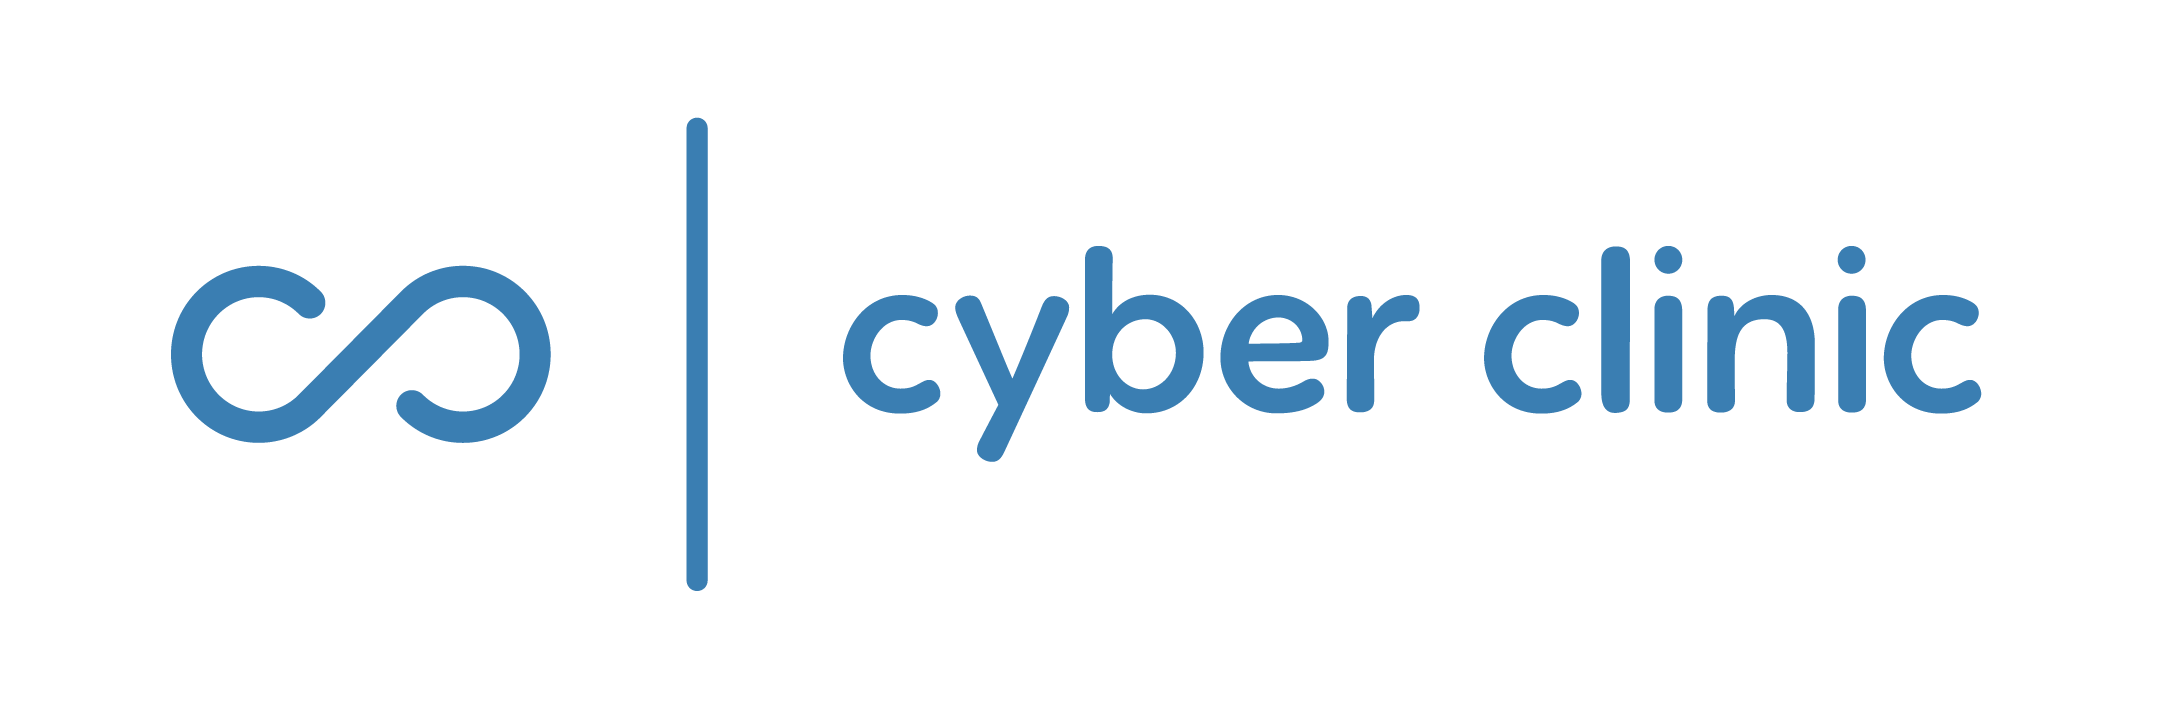 Cyberclinic logo